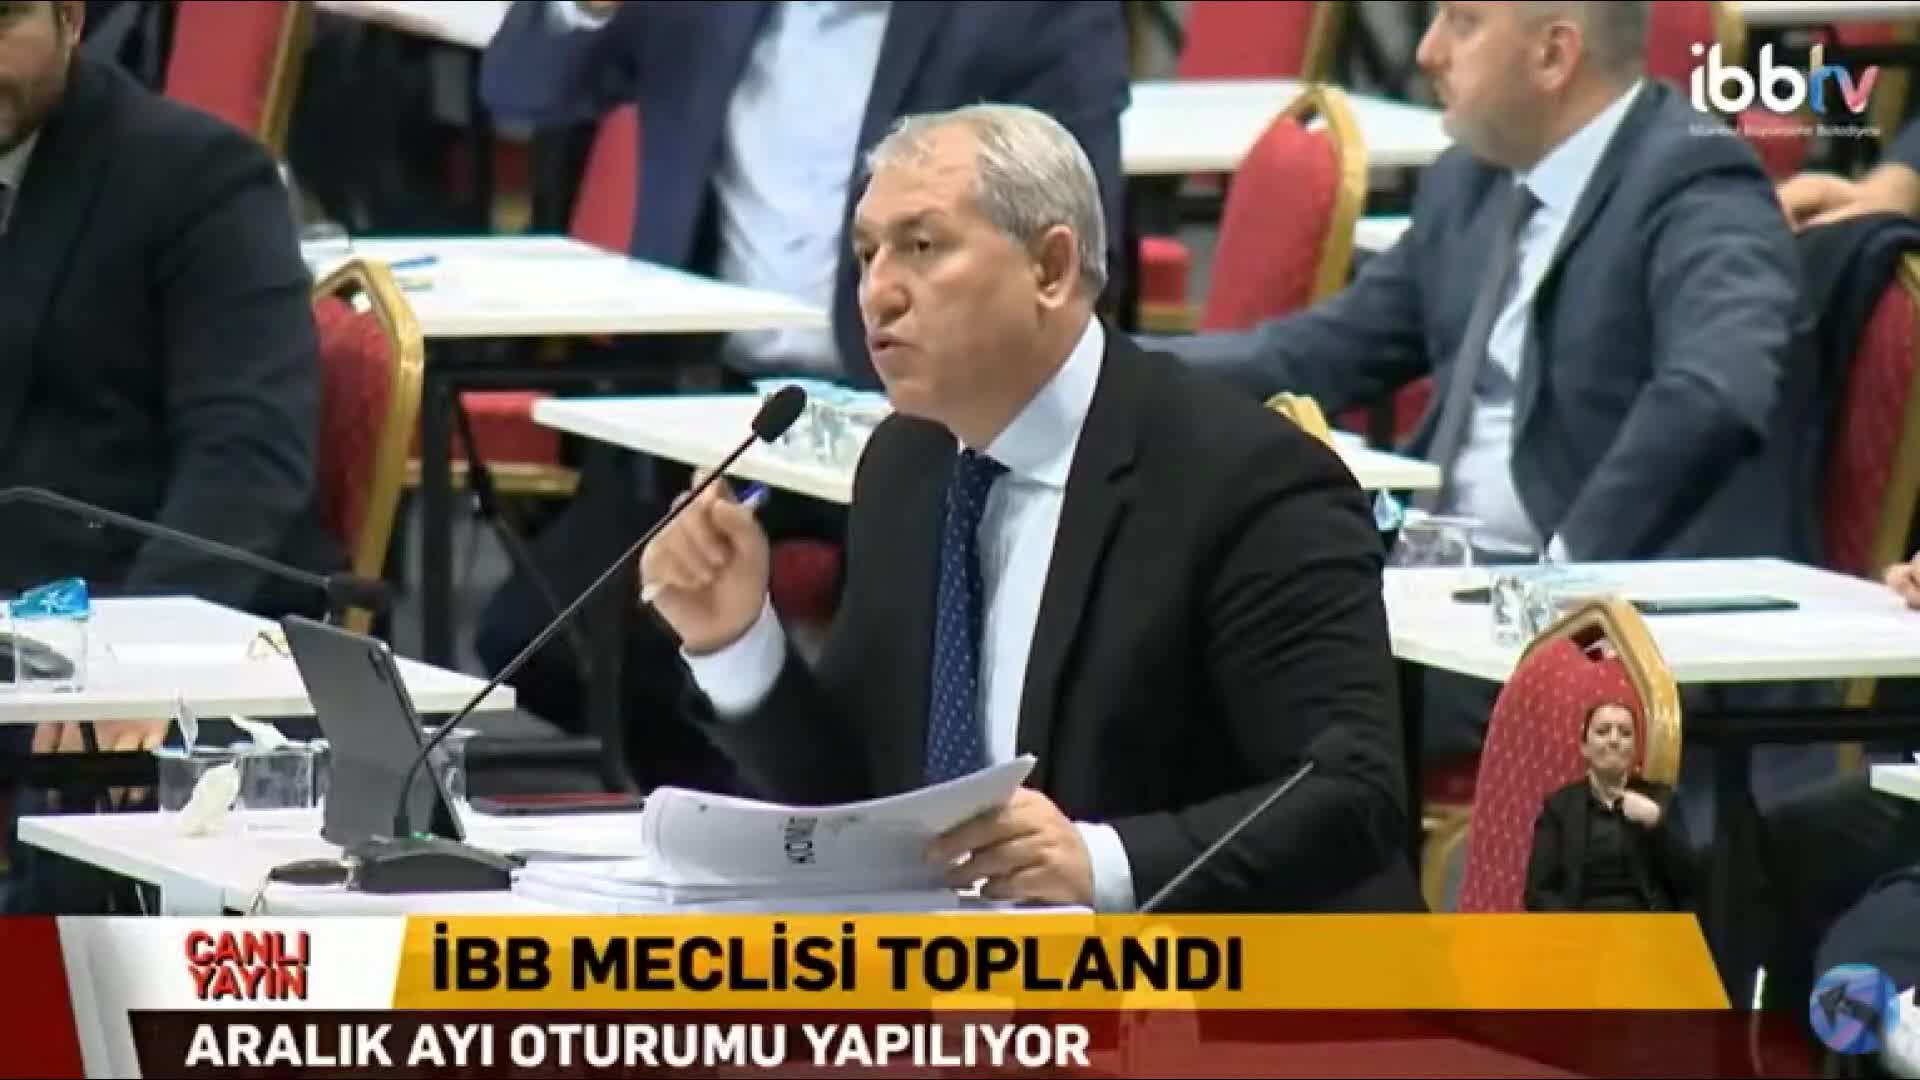 ÇYDD'den AKP'li Gökkuş'un sözlerine tepki: "hadsiz beyanları şiddetle kınıyor ve iade ediyoruz"